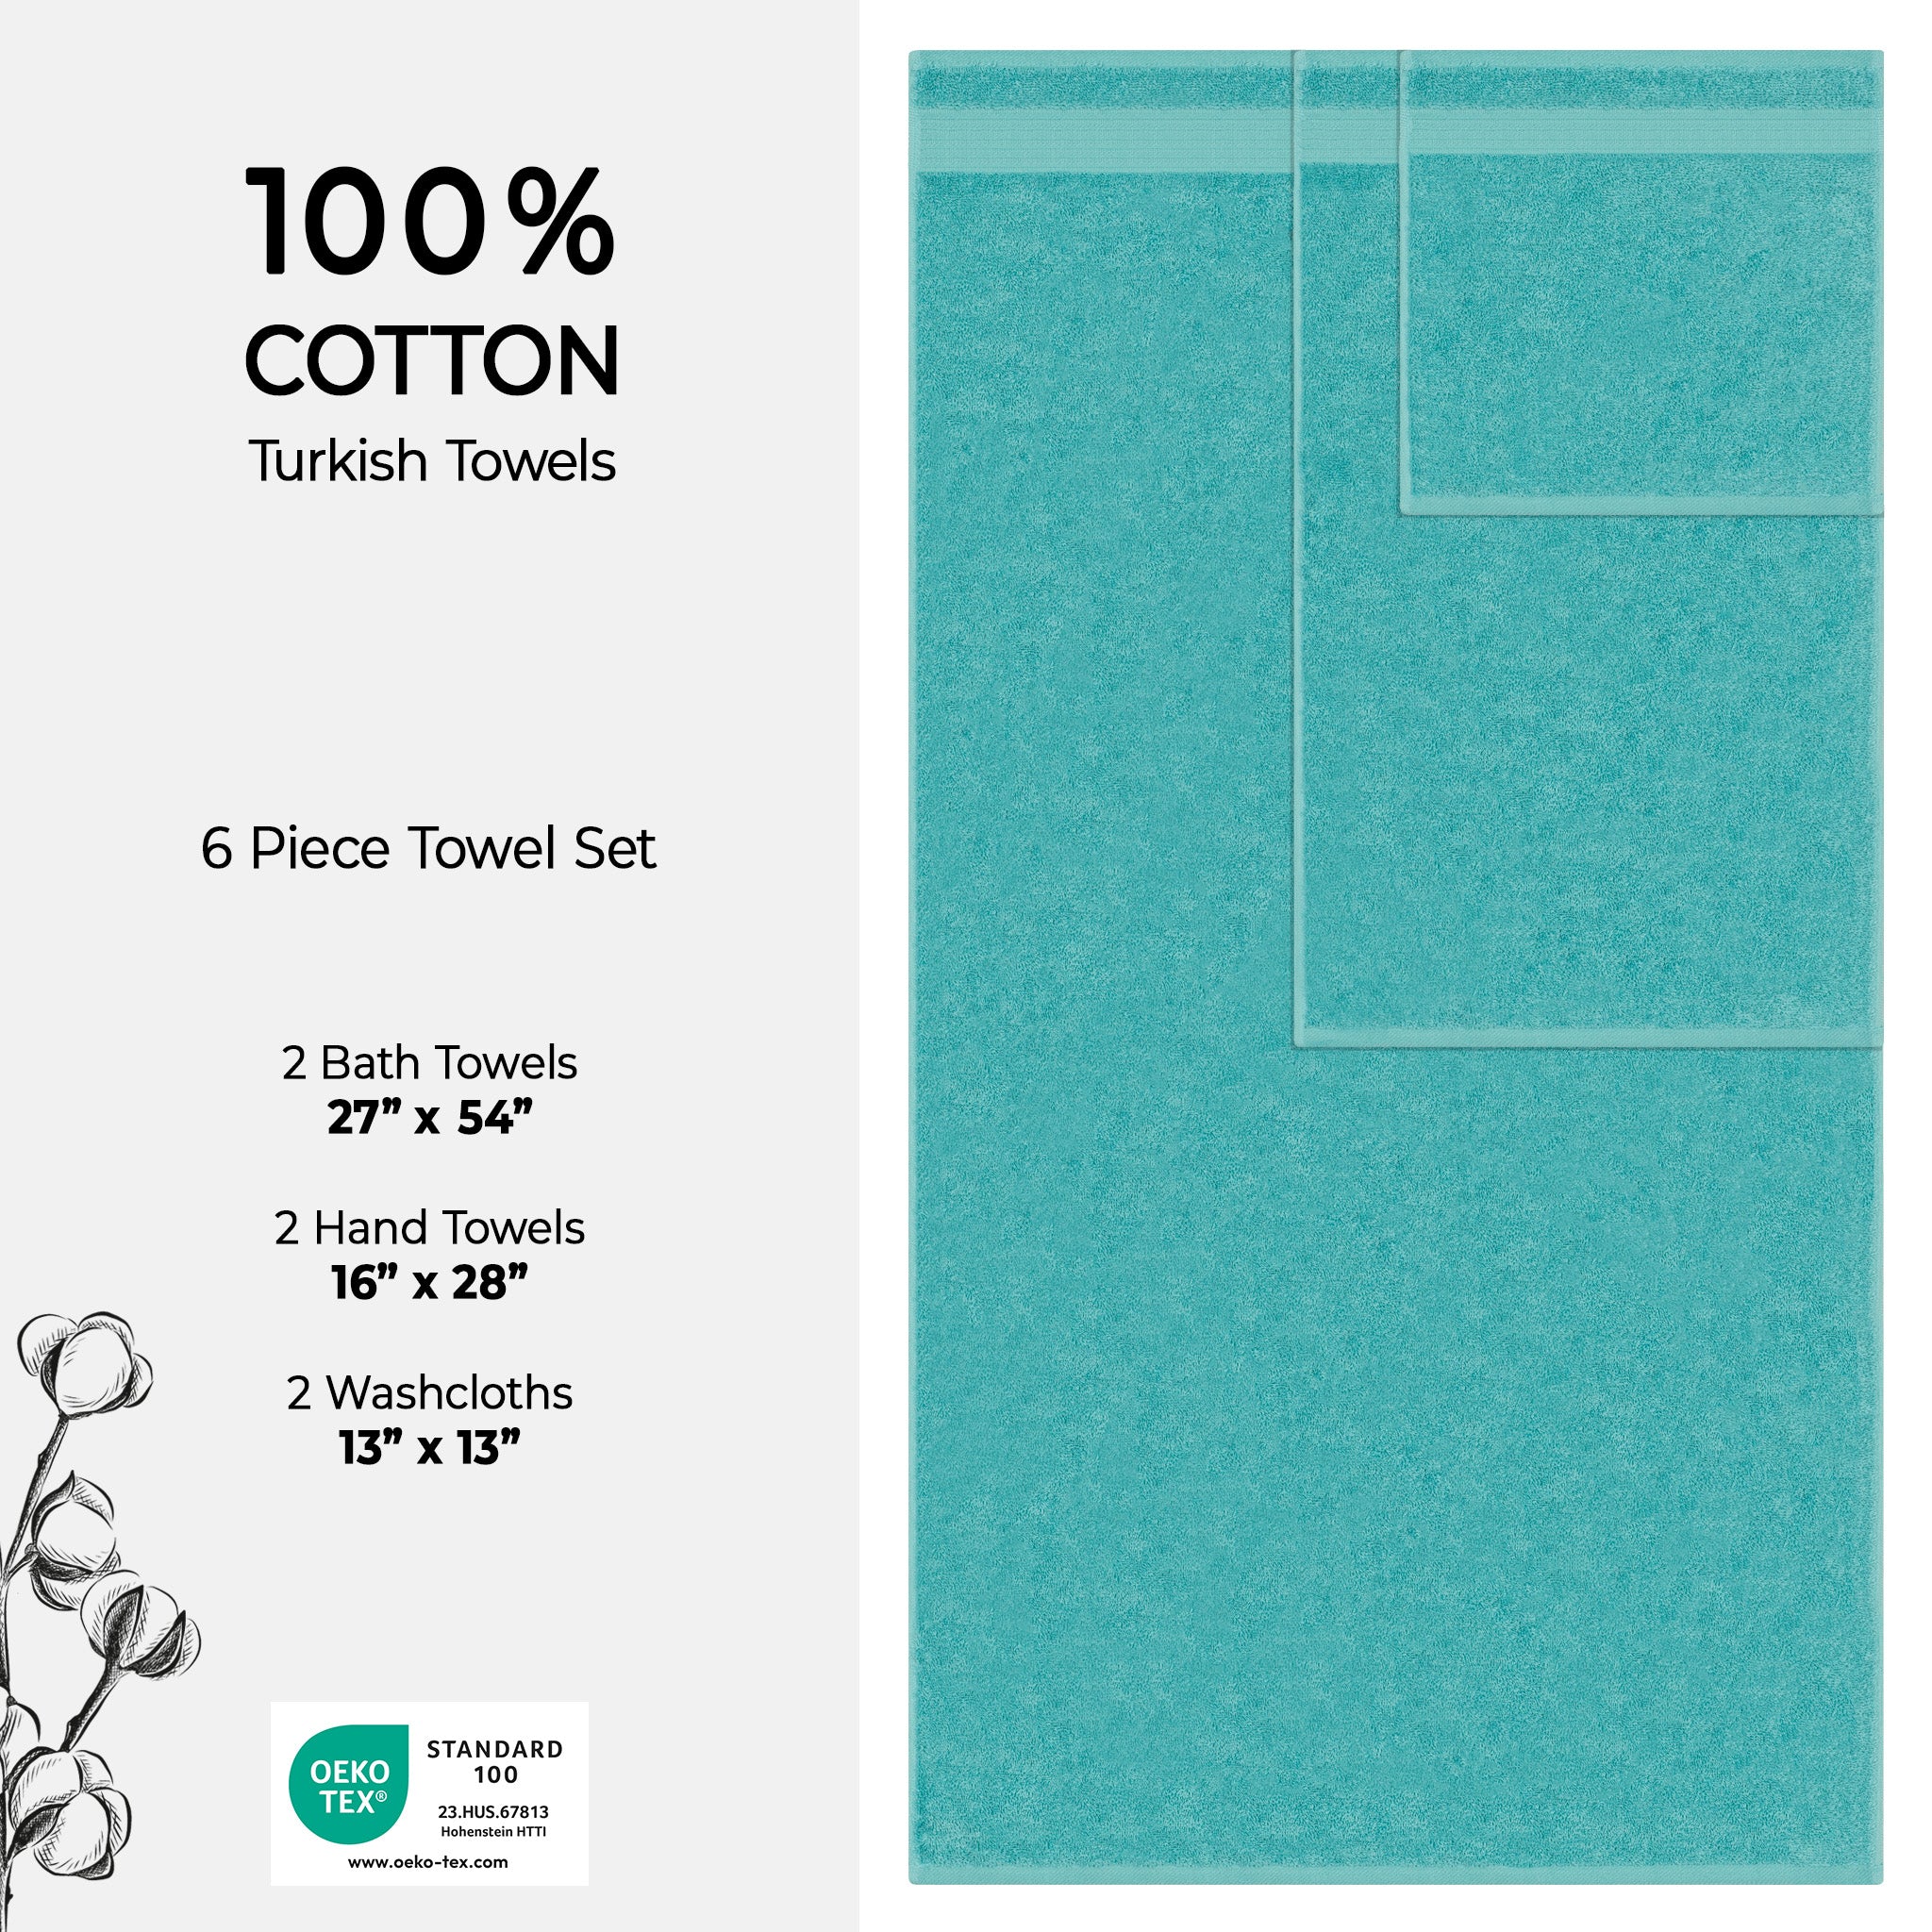 American Soft Linen Bekos 100% Cotton Turkish Towels 6 Piece Bath Towel Set -turquoise-blue-04